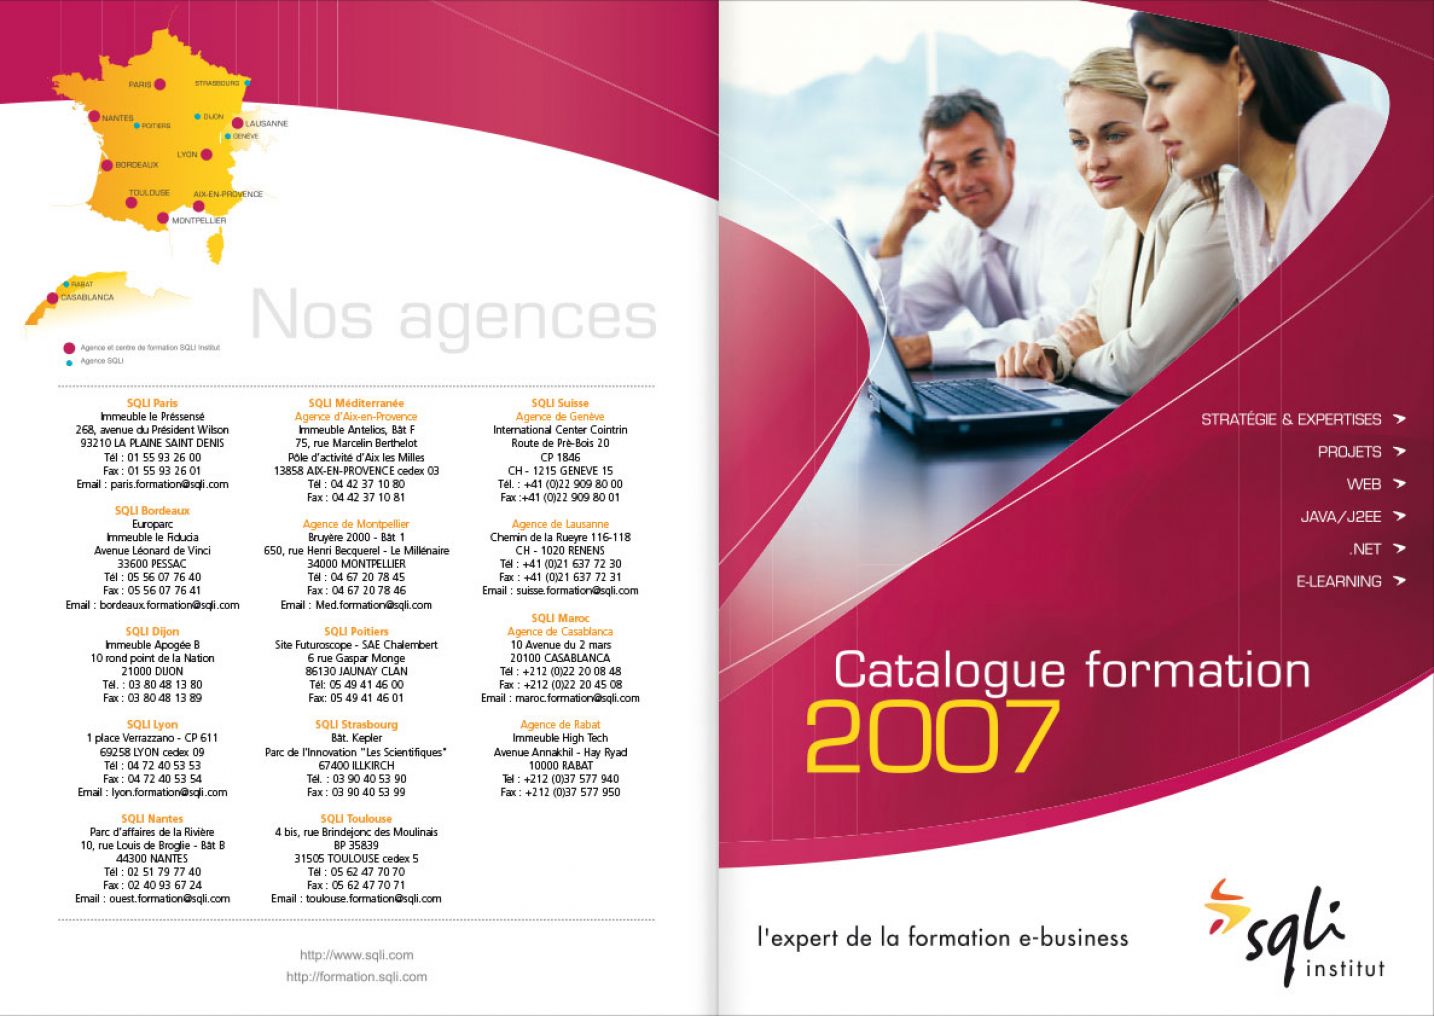 © Thierry Palau - Catalogue de formation SQLI Institut